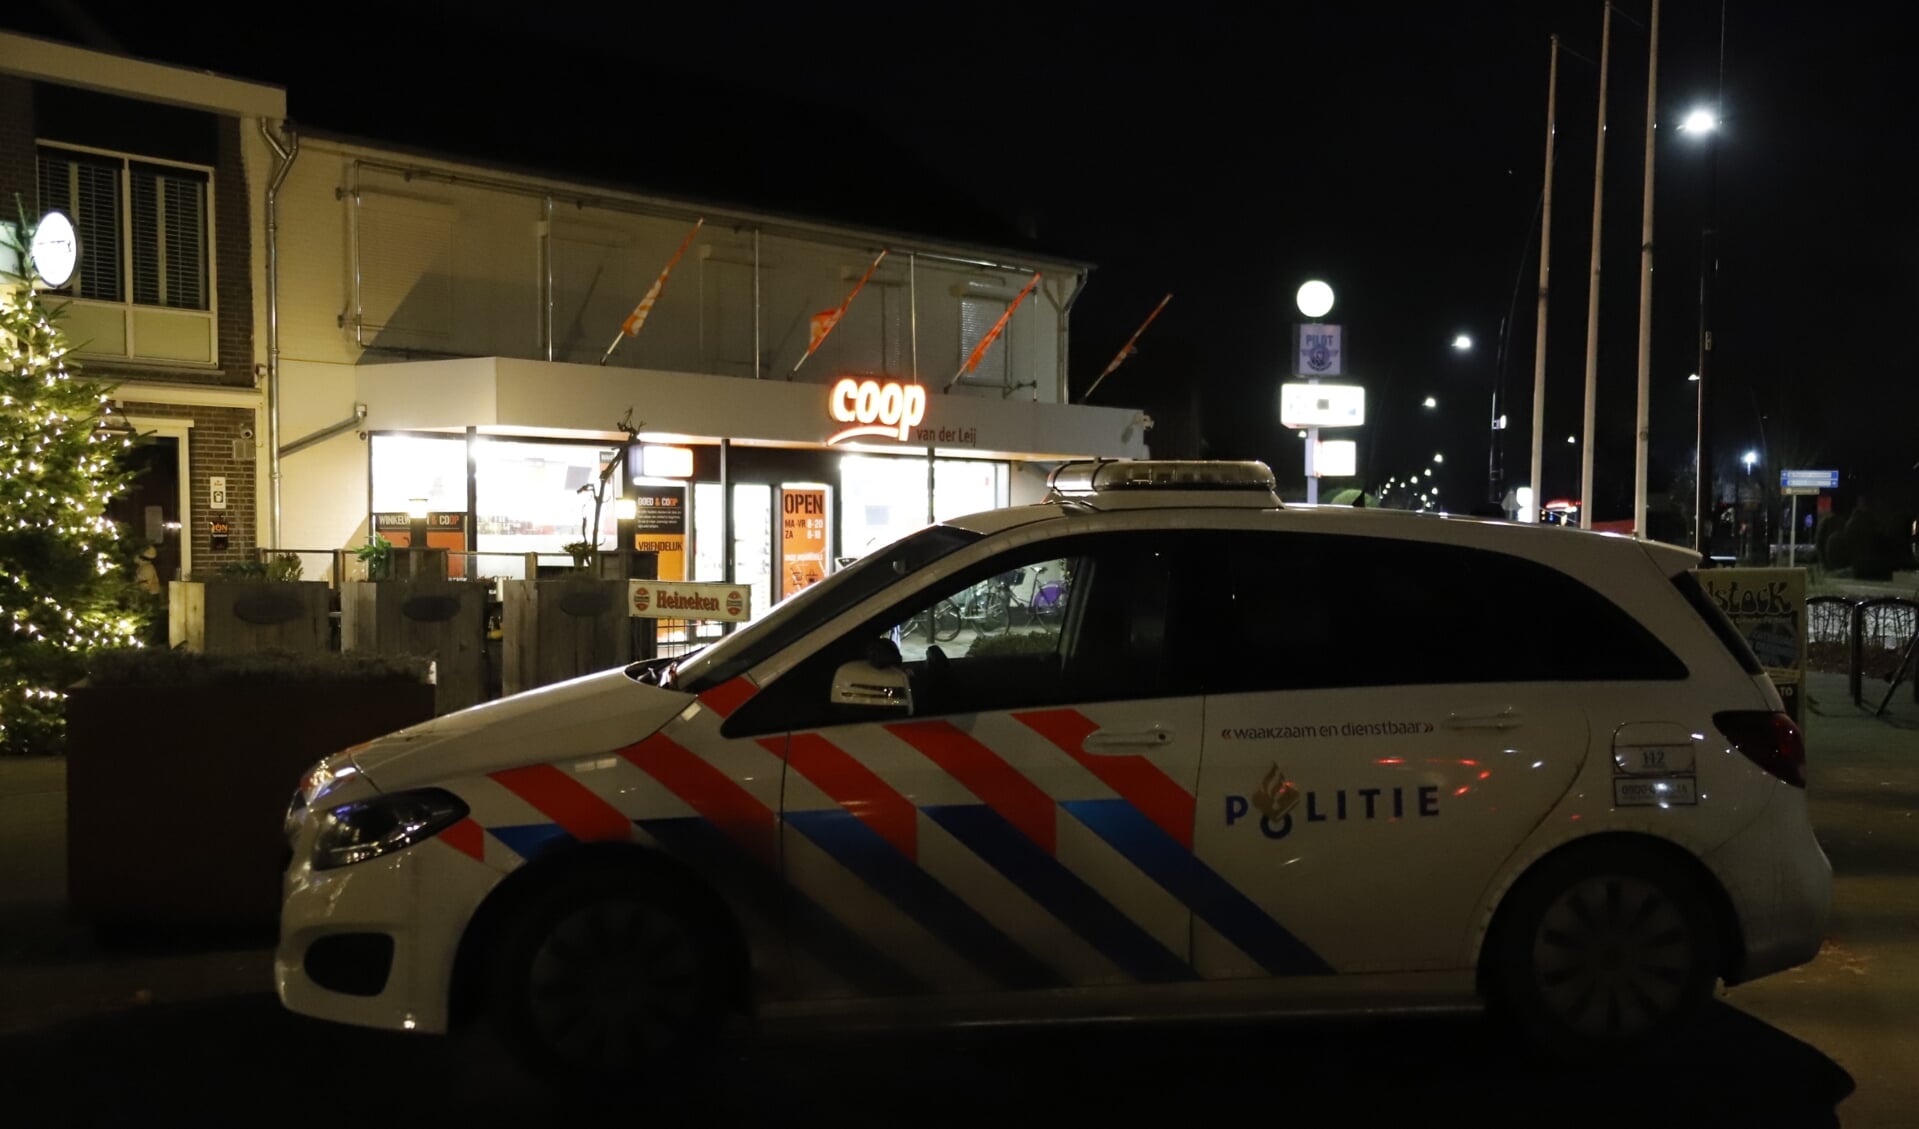 De politie is op zoek naar een man die dinsdagavond een overval pleegde op supermarkt Coop in Ysselsteyn